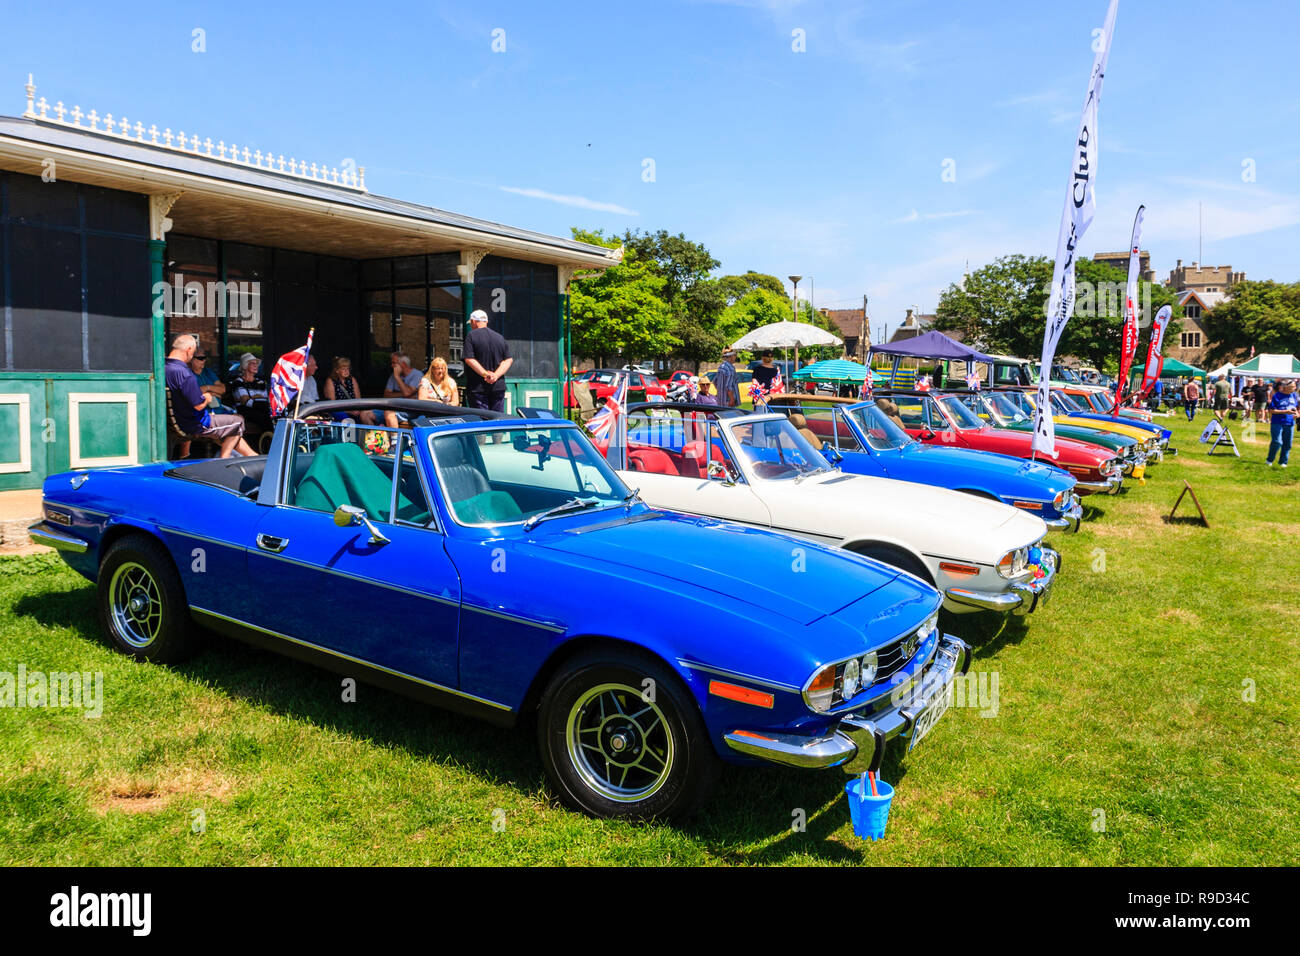 Schaufel und Spaten Classic Car Show auf Ramsgate Strandpromenade. Reihe von sieben vintage Triumph Bühne Autos, in verschiedenen Farben. Strahlender Sonnenschein, blauer Himmel. Stockfoto